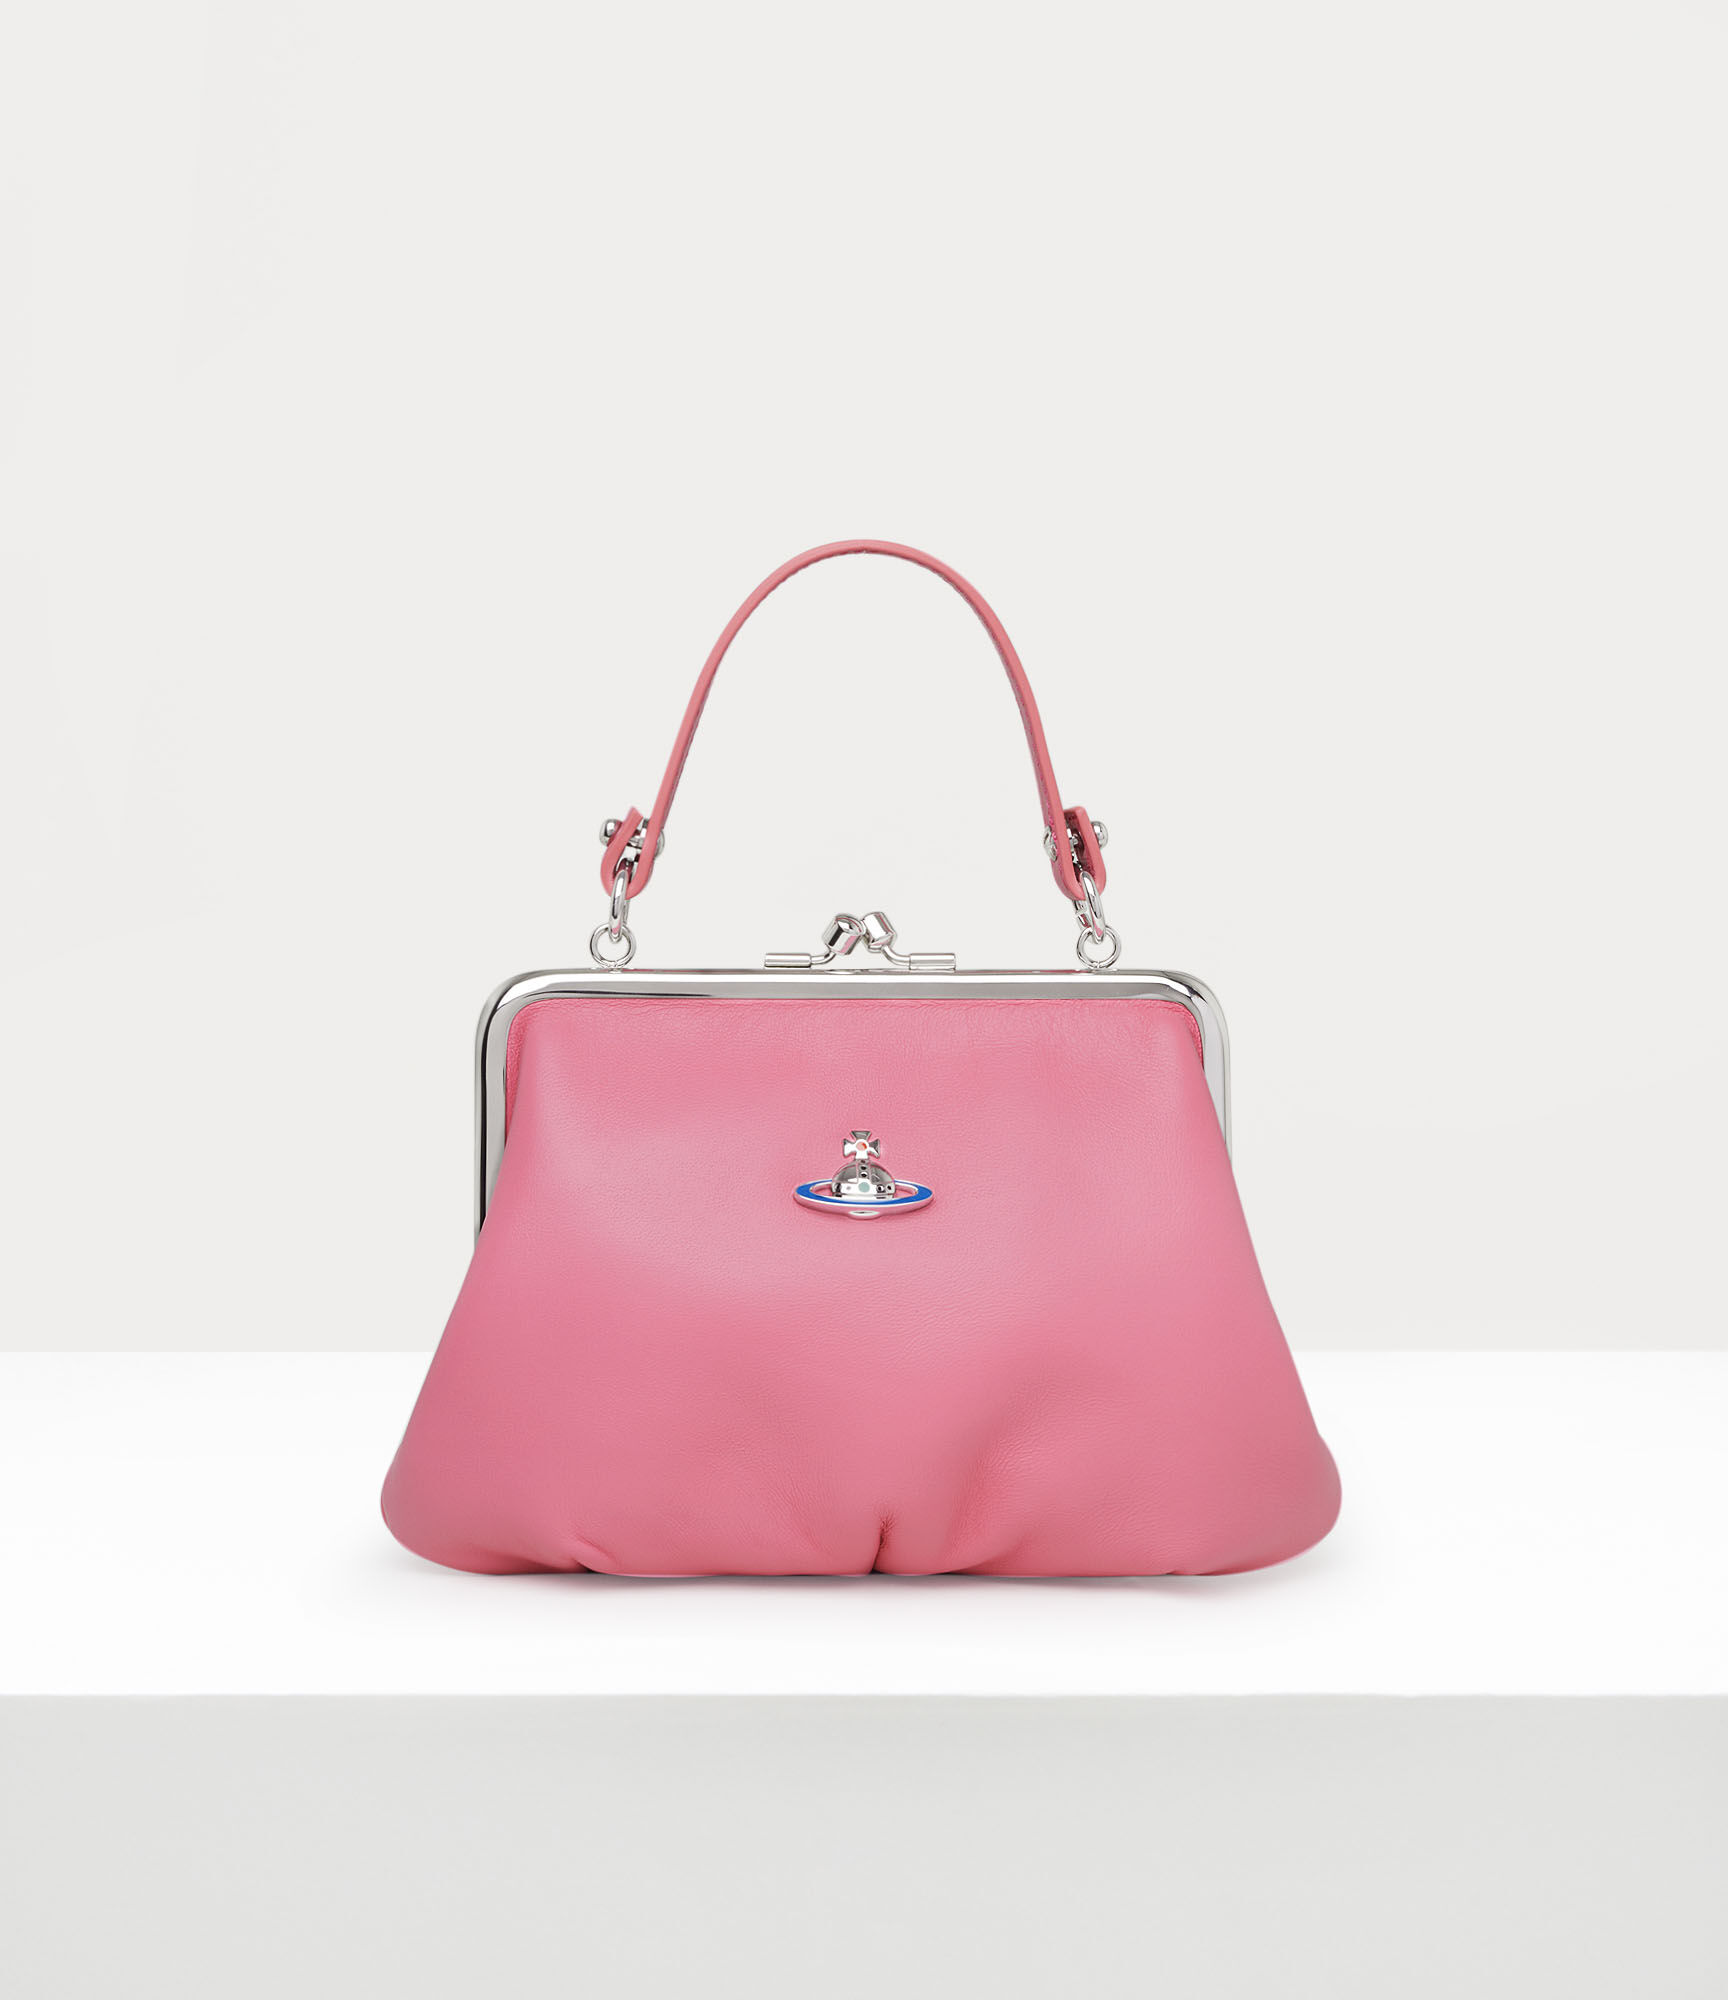 Handbags: Designer Handbags, Designer Purses